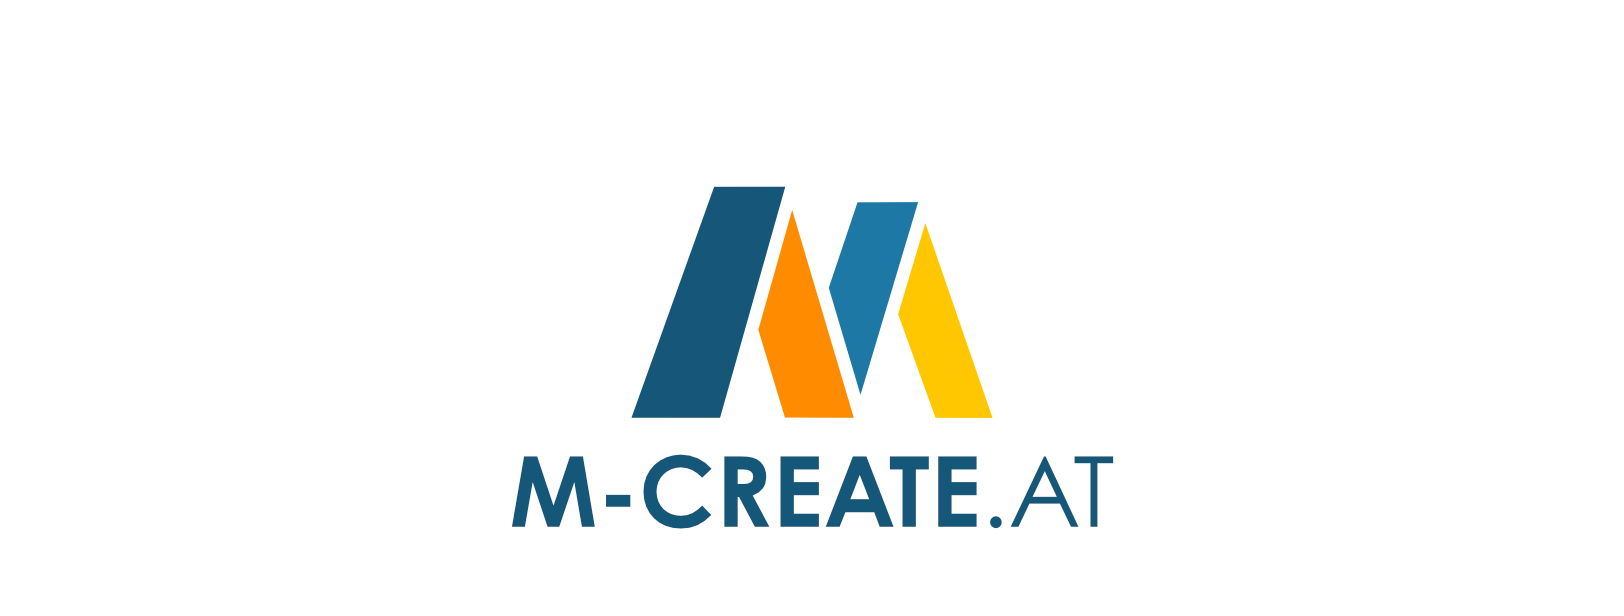 (c) M-create.at